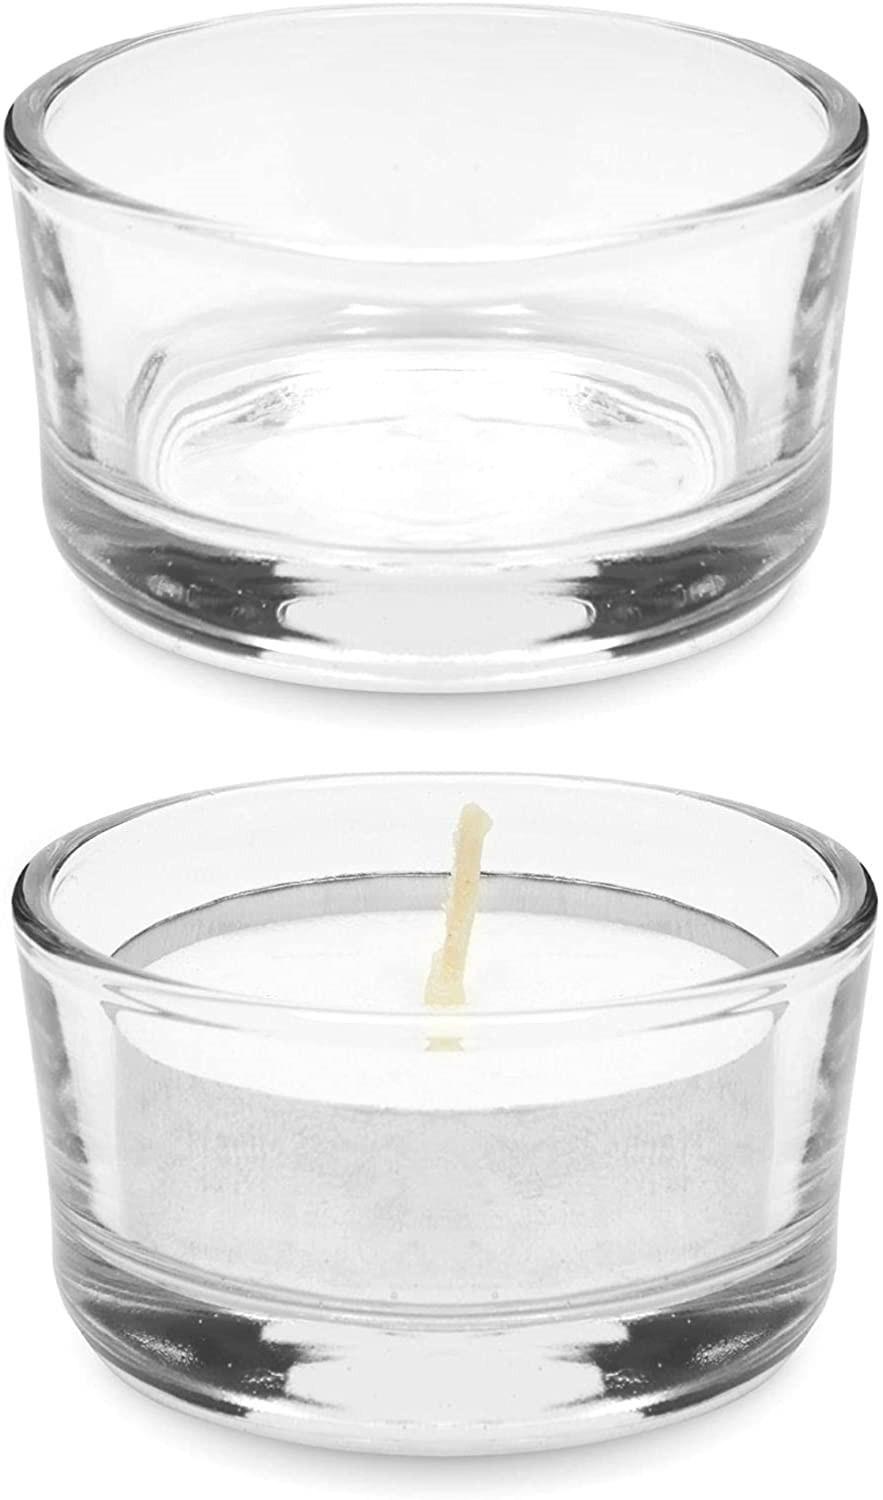 Wholesale 36ml 1 Oz Glass Tea Candlestick Suitable for Wedding Tea Lamp Central Decoration Home Decoration D5.2*H3.2cm